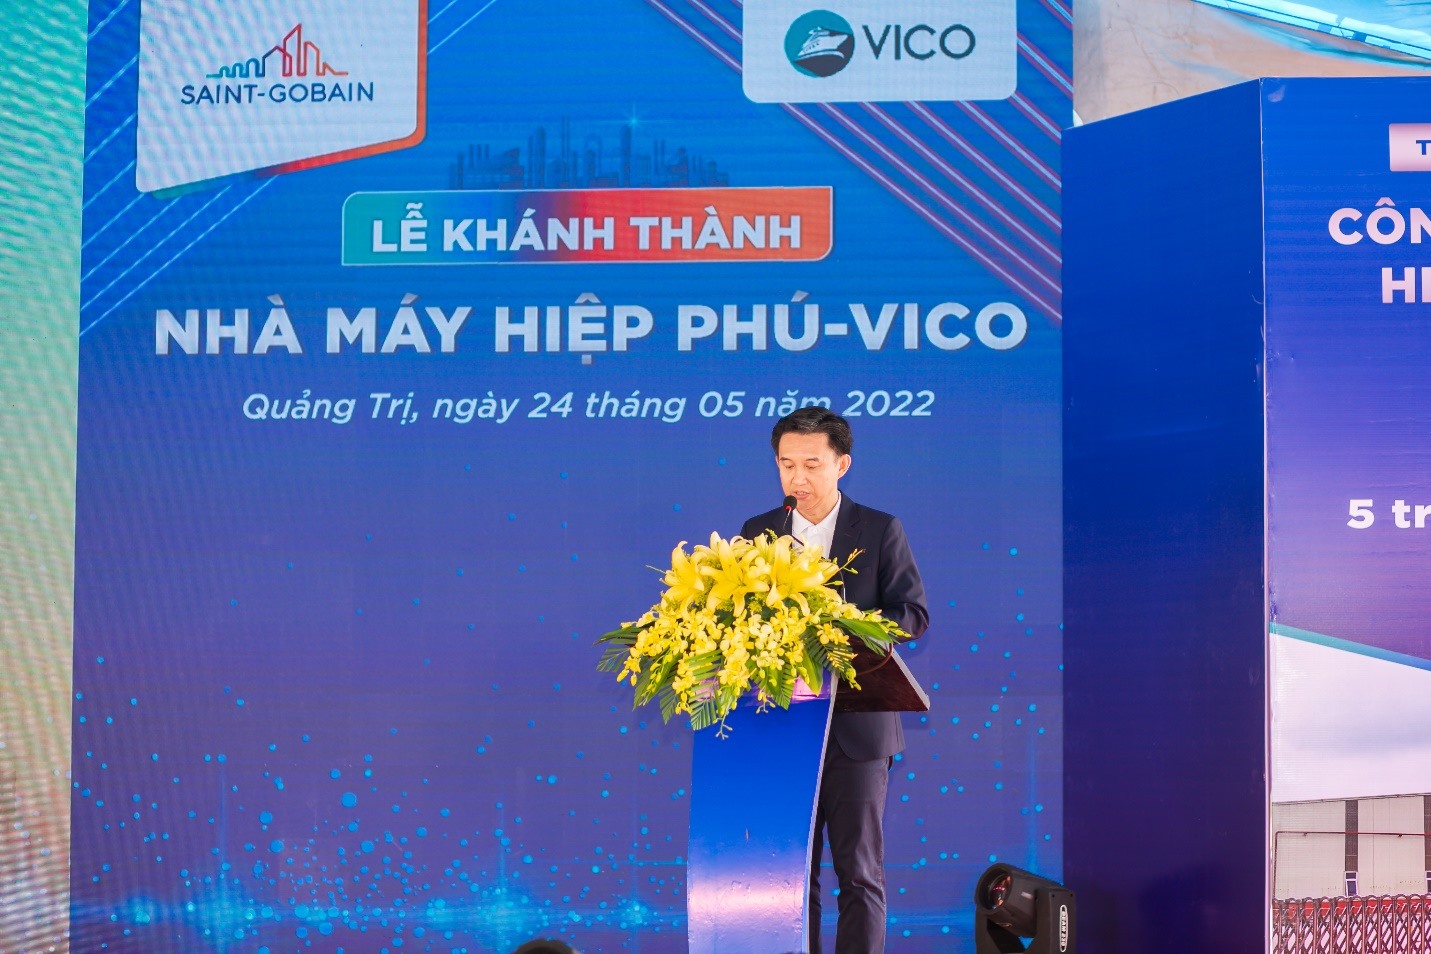 Ông Nguyễn Trường Hải - Tổng Giám đốc Công ty Saint-Gobain Việt Nam